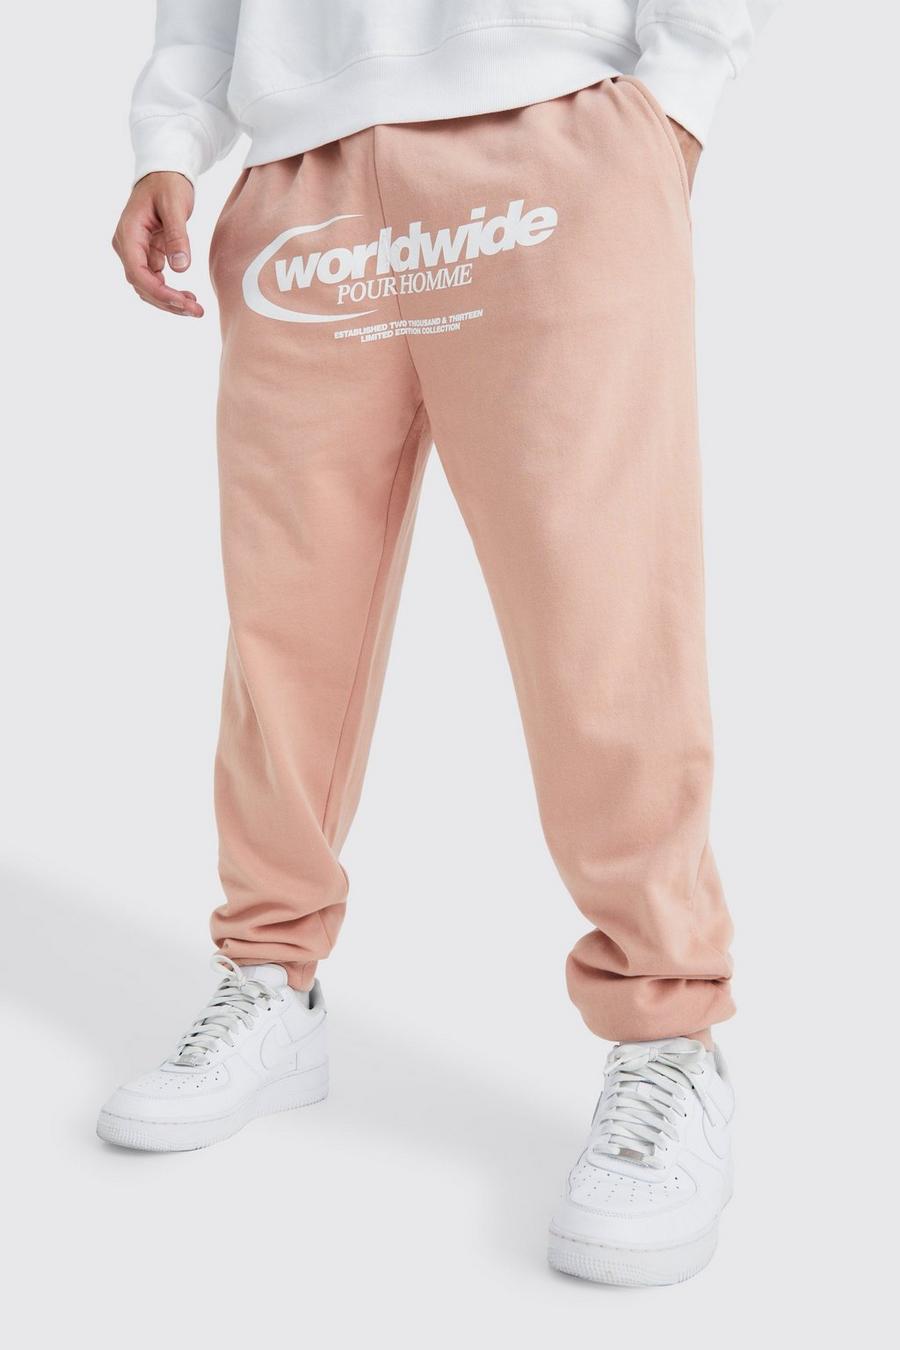 Pantalón deportivo oversize con estampado gráfico Worldwide, Dusty pink